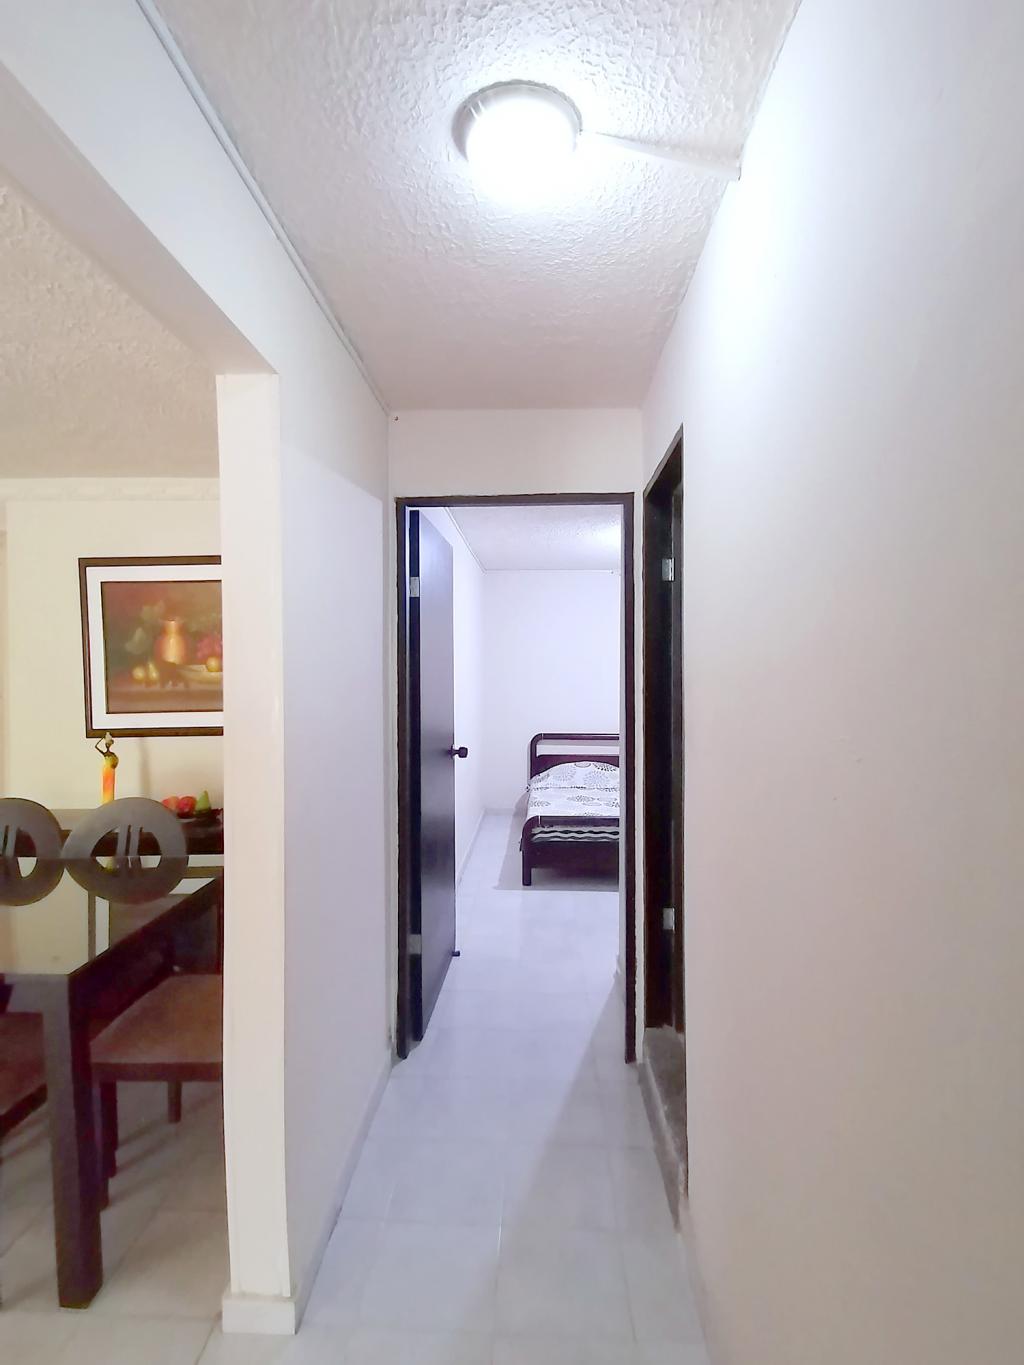 Apartamento en Venta por Issa Saieh Inmobiliaria ubicado en Barranquilla. El código del inmueble es: 7255470 Imágen 3